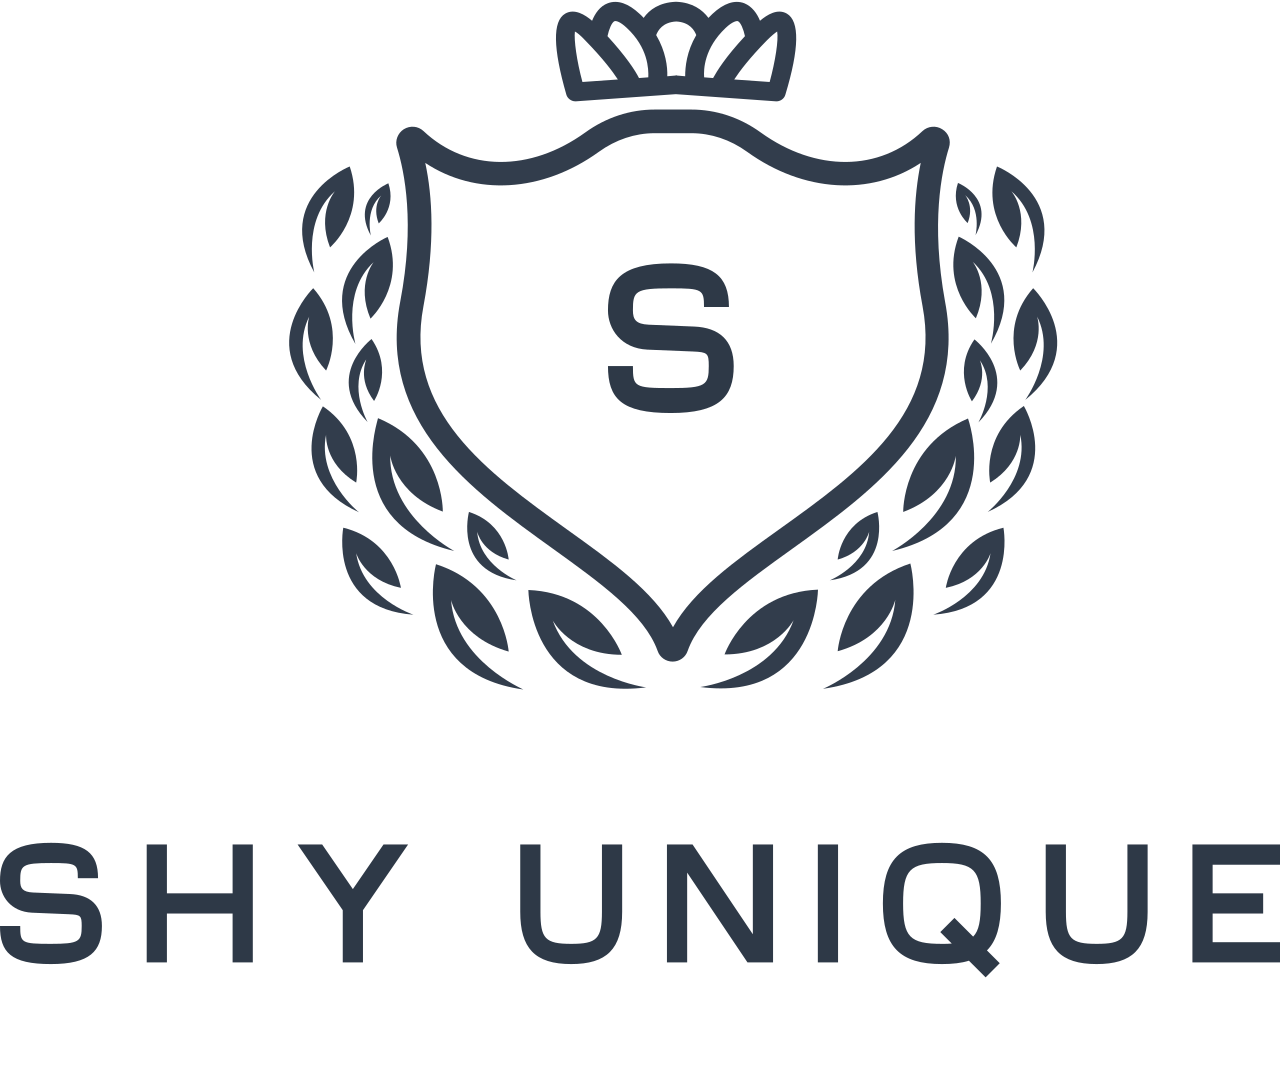 Shy Unique 's logo